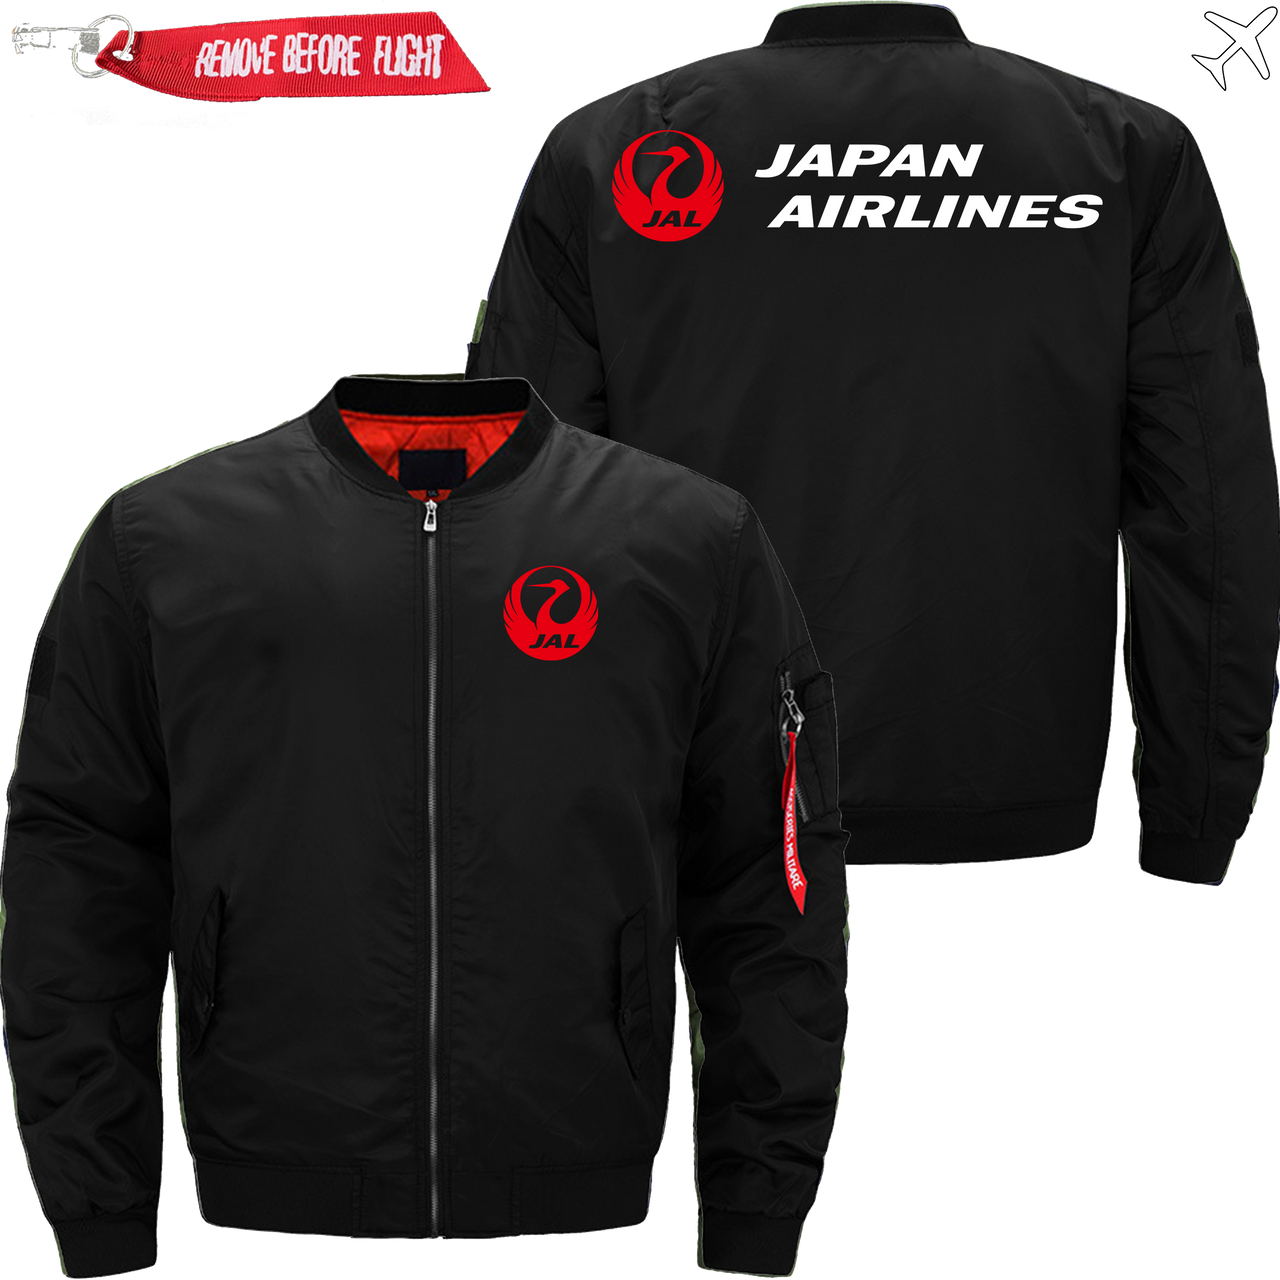 JAPAN AIRLINE JACKET